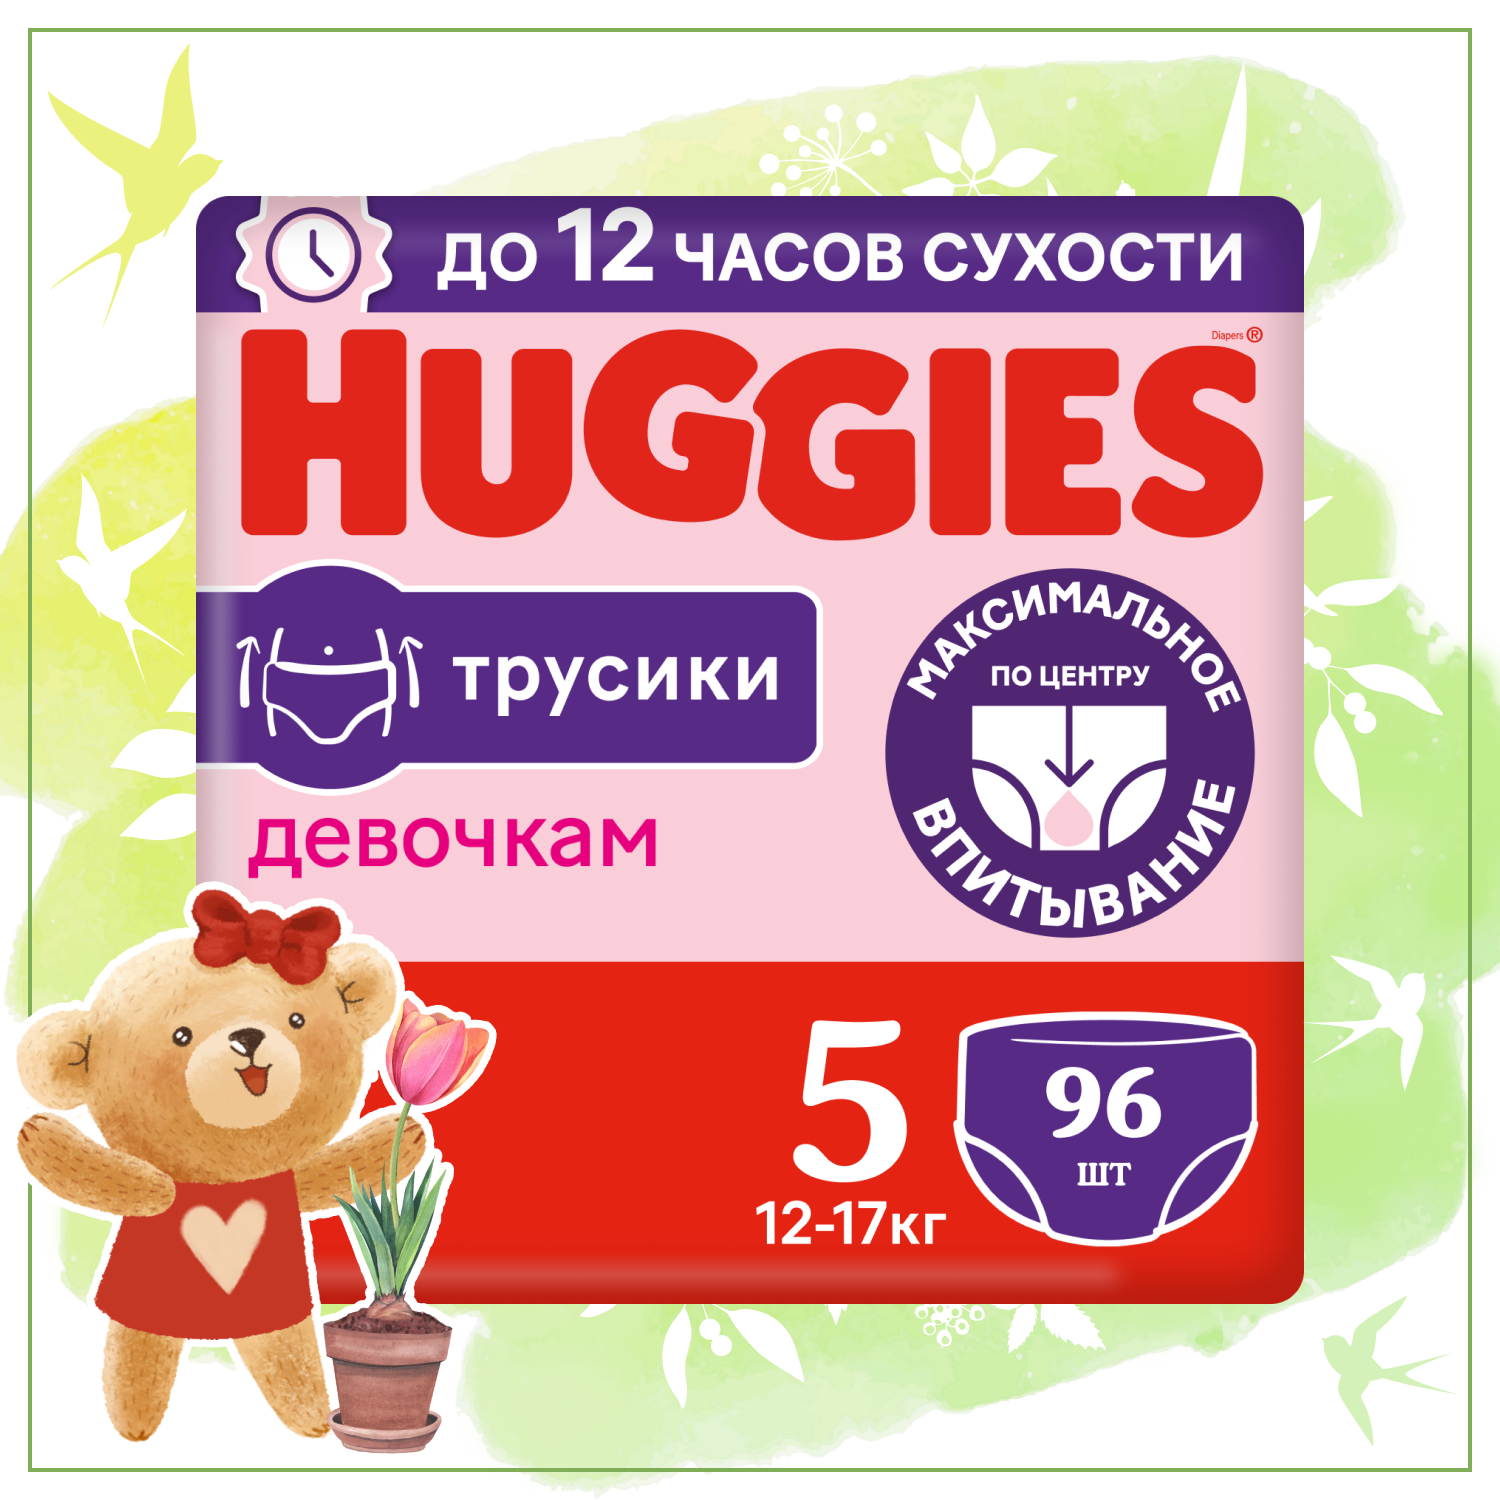 Huggies трусики для девочек 5 (12-17 кг), 96 шт.